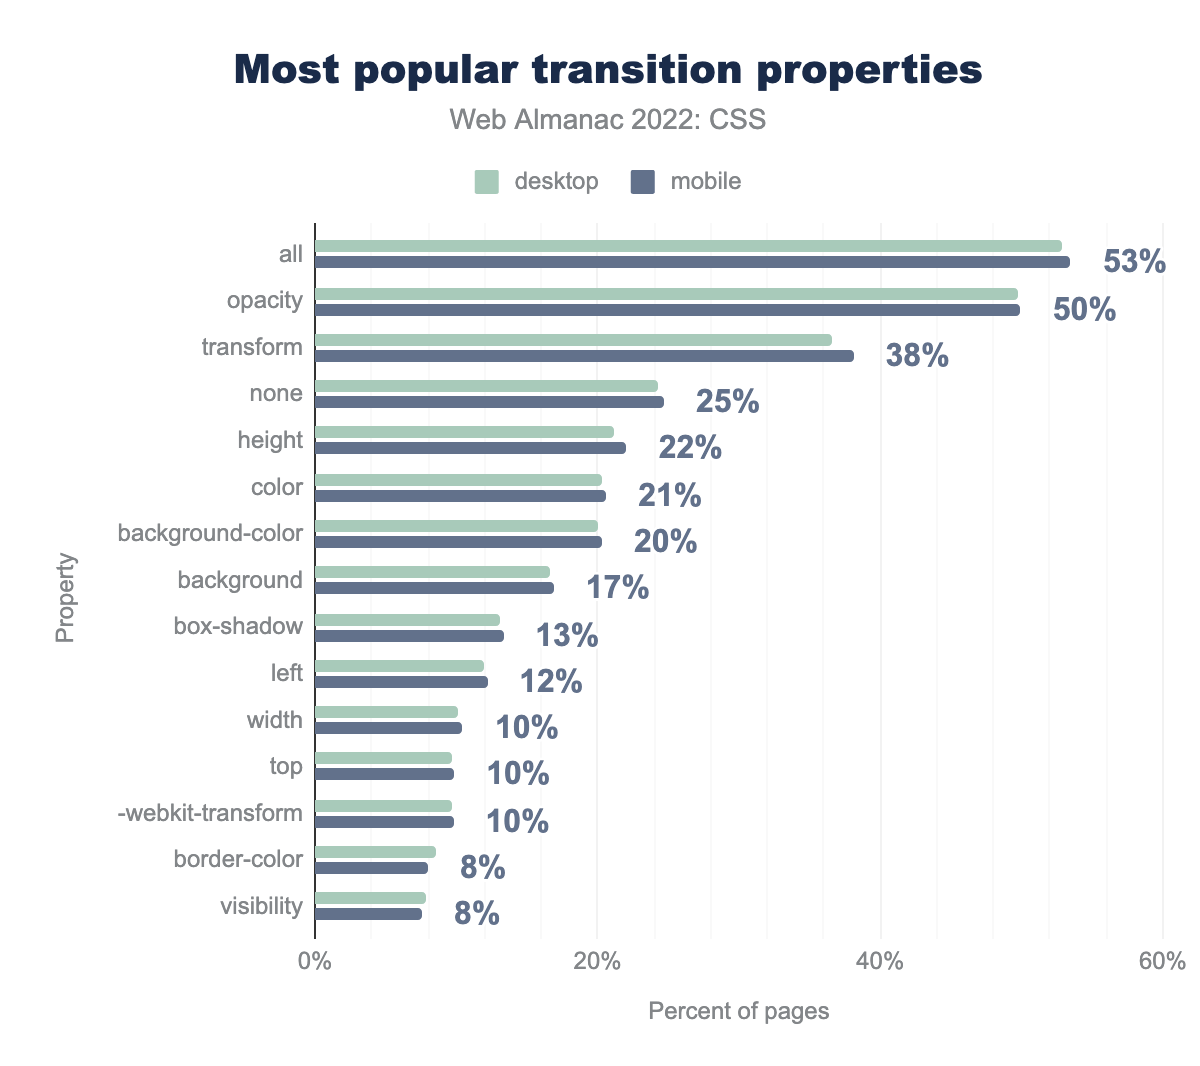 Le proprietà transition più popolari per percentuale di pagine.